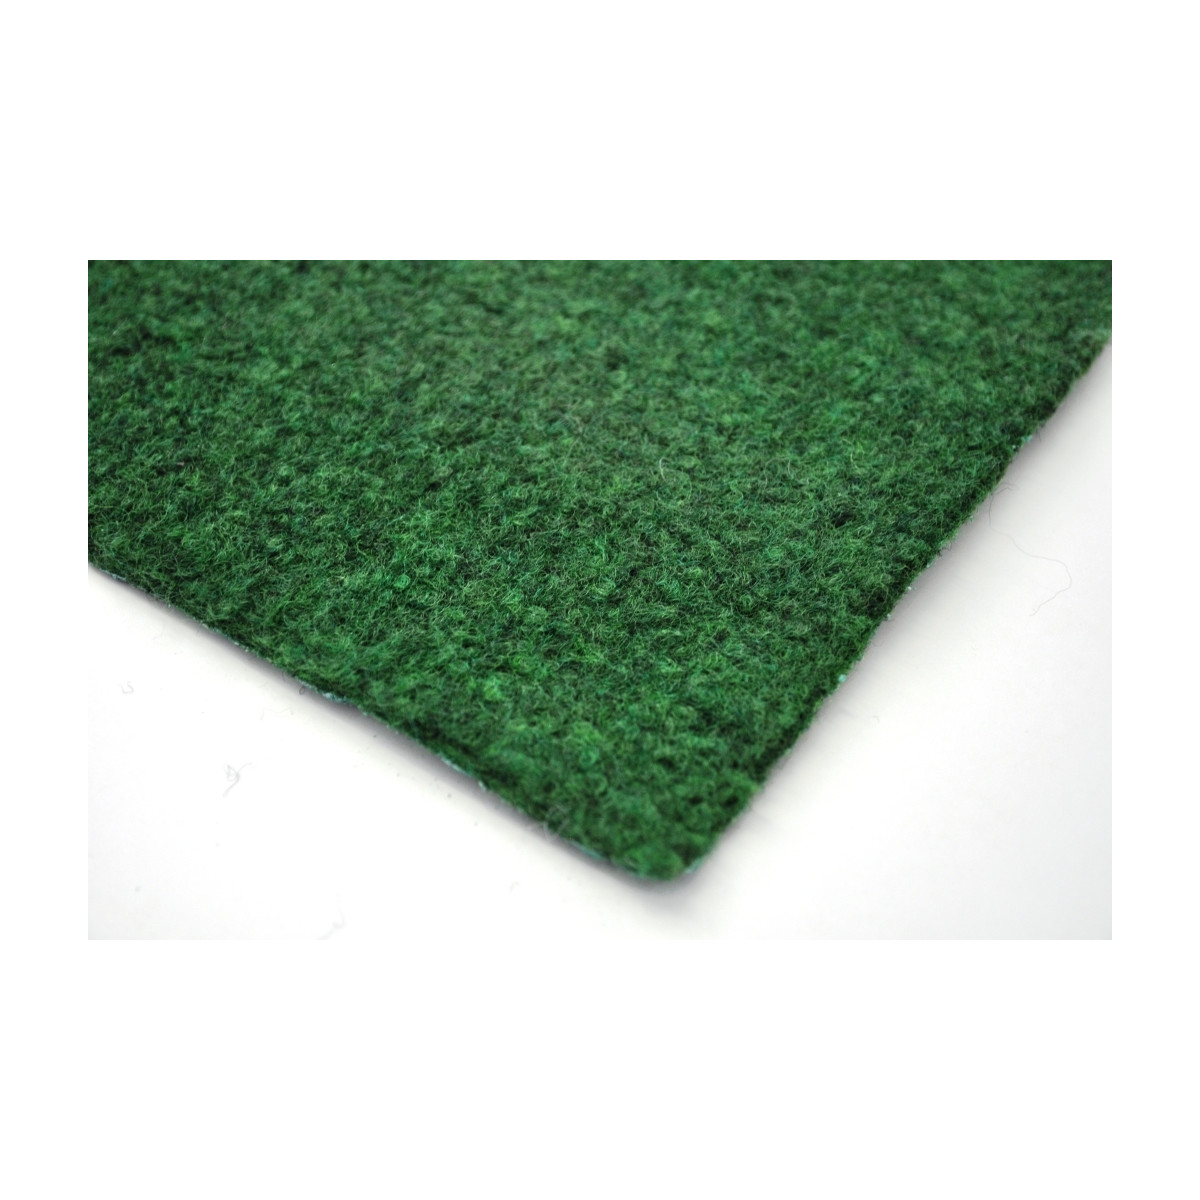 AKCIA: 100x350 cm Trávny koberec Sporting